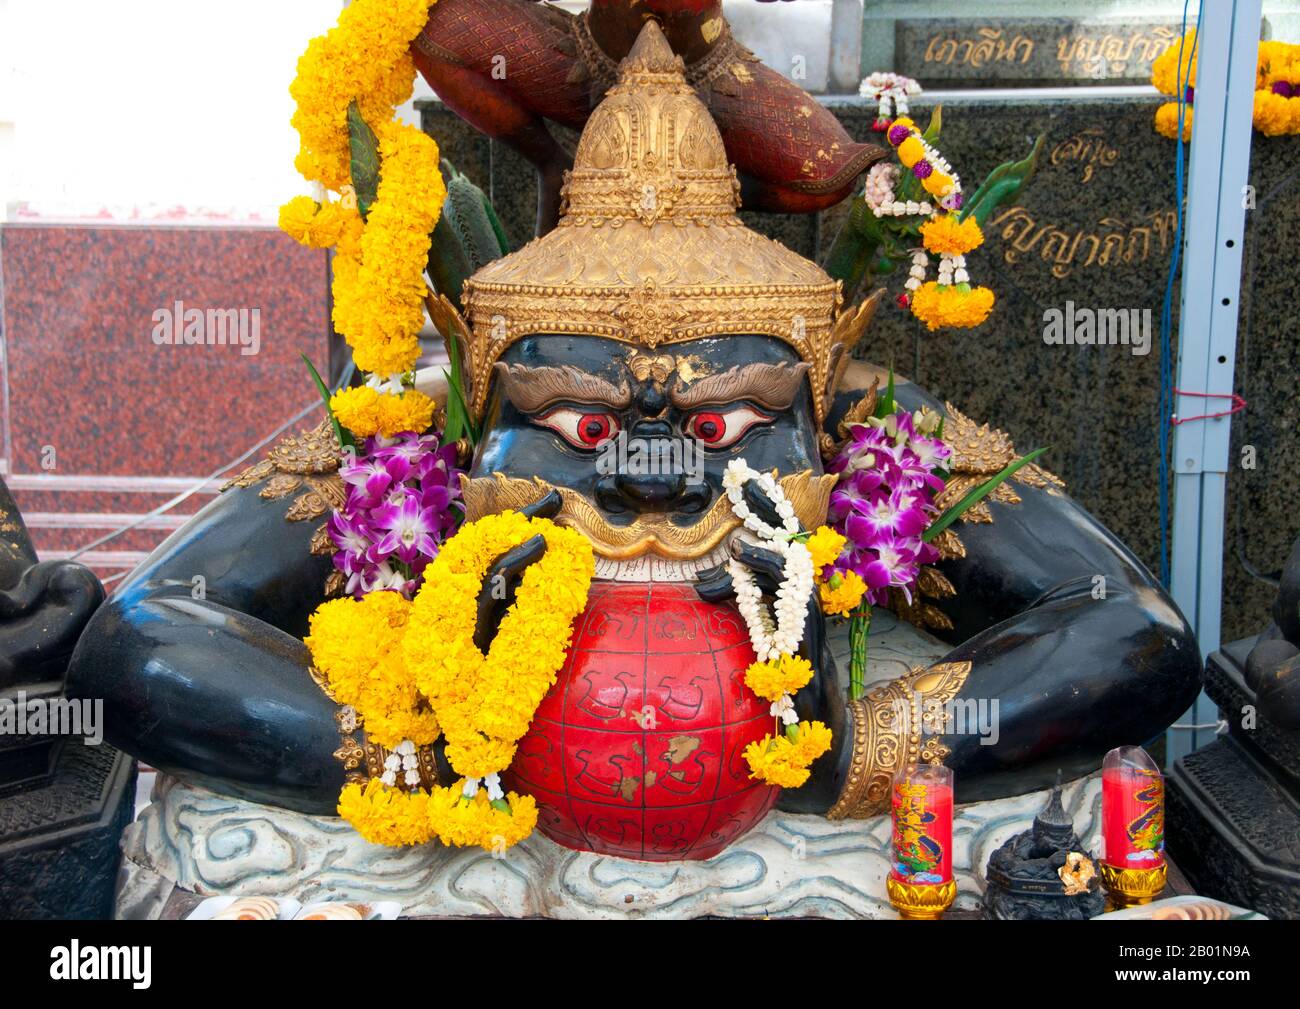 Thailandia: Una rappresentazione di Rahu (demone serpente e cavatore di eclissi solari e lunari), inghiottire la luna, Wat Traimit, Bangkok. Nella mitologia indù, Rahu è un serpente che inghiottisce il sole o la luna causando eclissi. È raffigurato nell'arte come un drago senza corpo in sella ad un carro trainato da otto cavalli neri. Rahu è uno dei navagrahas (nove pianeti) nell'astrologia vedica. Il Rahu kala (ora del giorno sotto l'influenza di Rahu) è considerato infavorevole. Wat Traimit, un tempio buddista tailandese a Chinatown, Bangkok, è principalmente noto per ospitare la più grande figura di Buddha in oro massiccio del mondo. Foto Stock